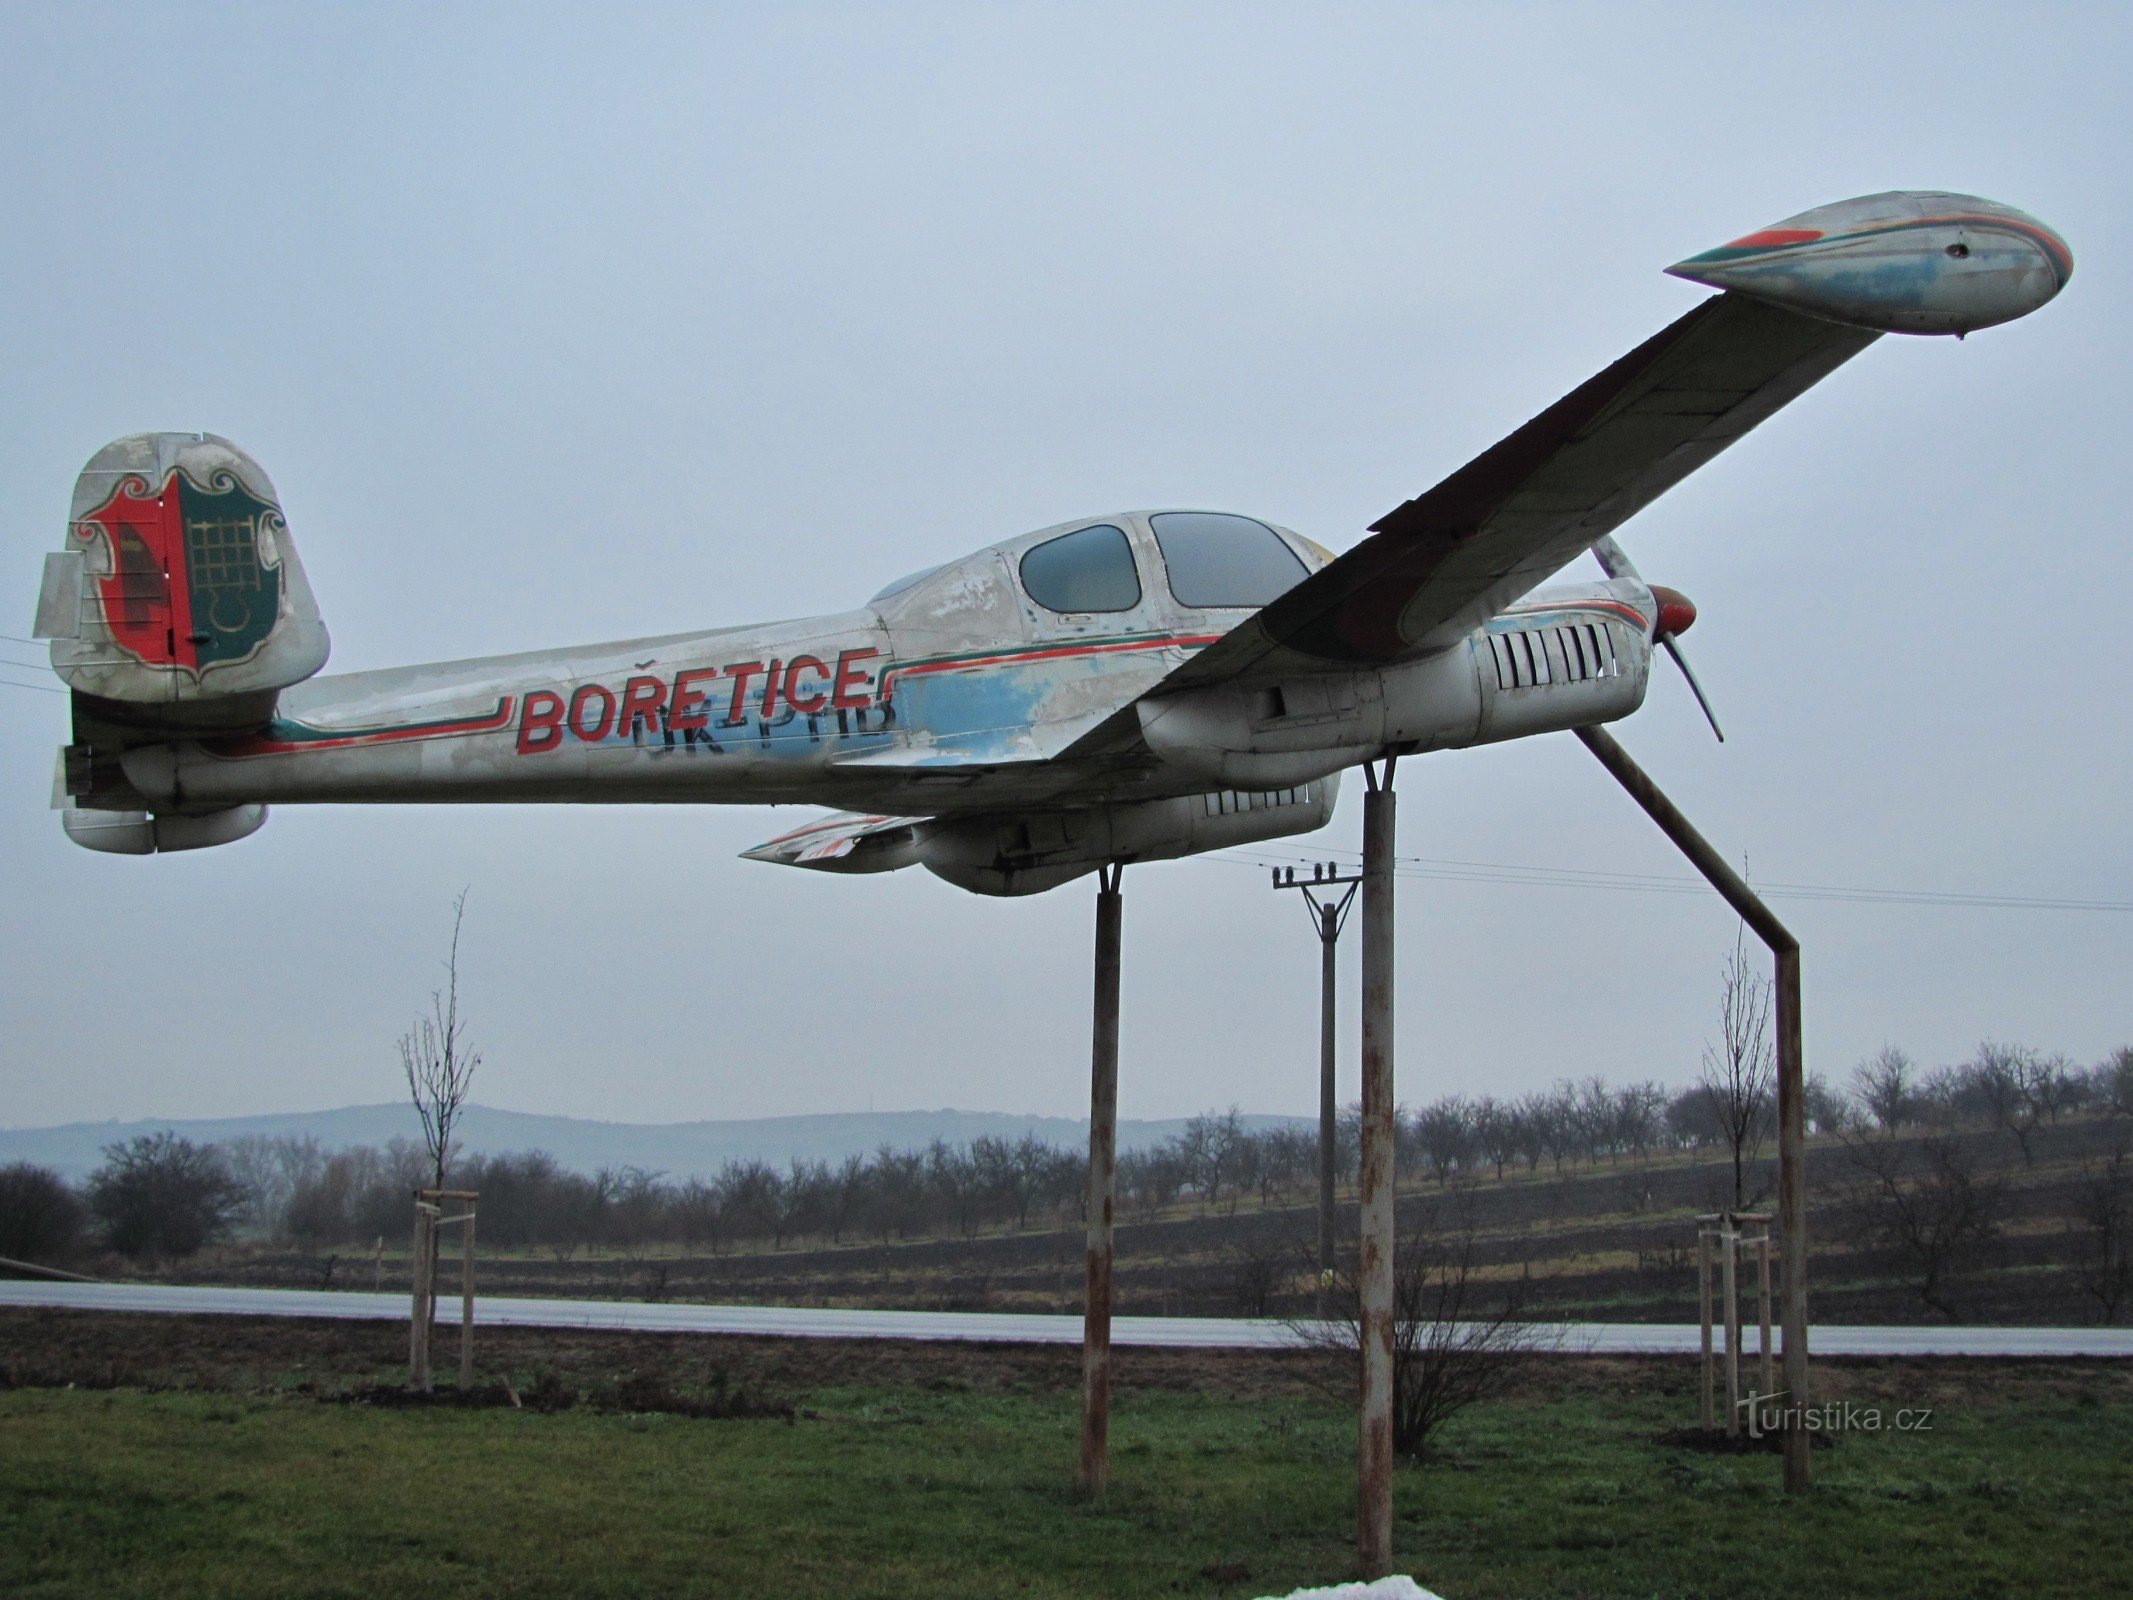 Bořetice – aircraft L-200 Morava